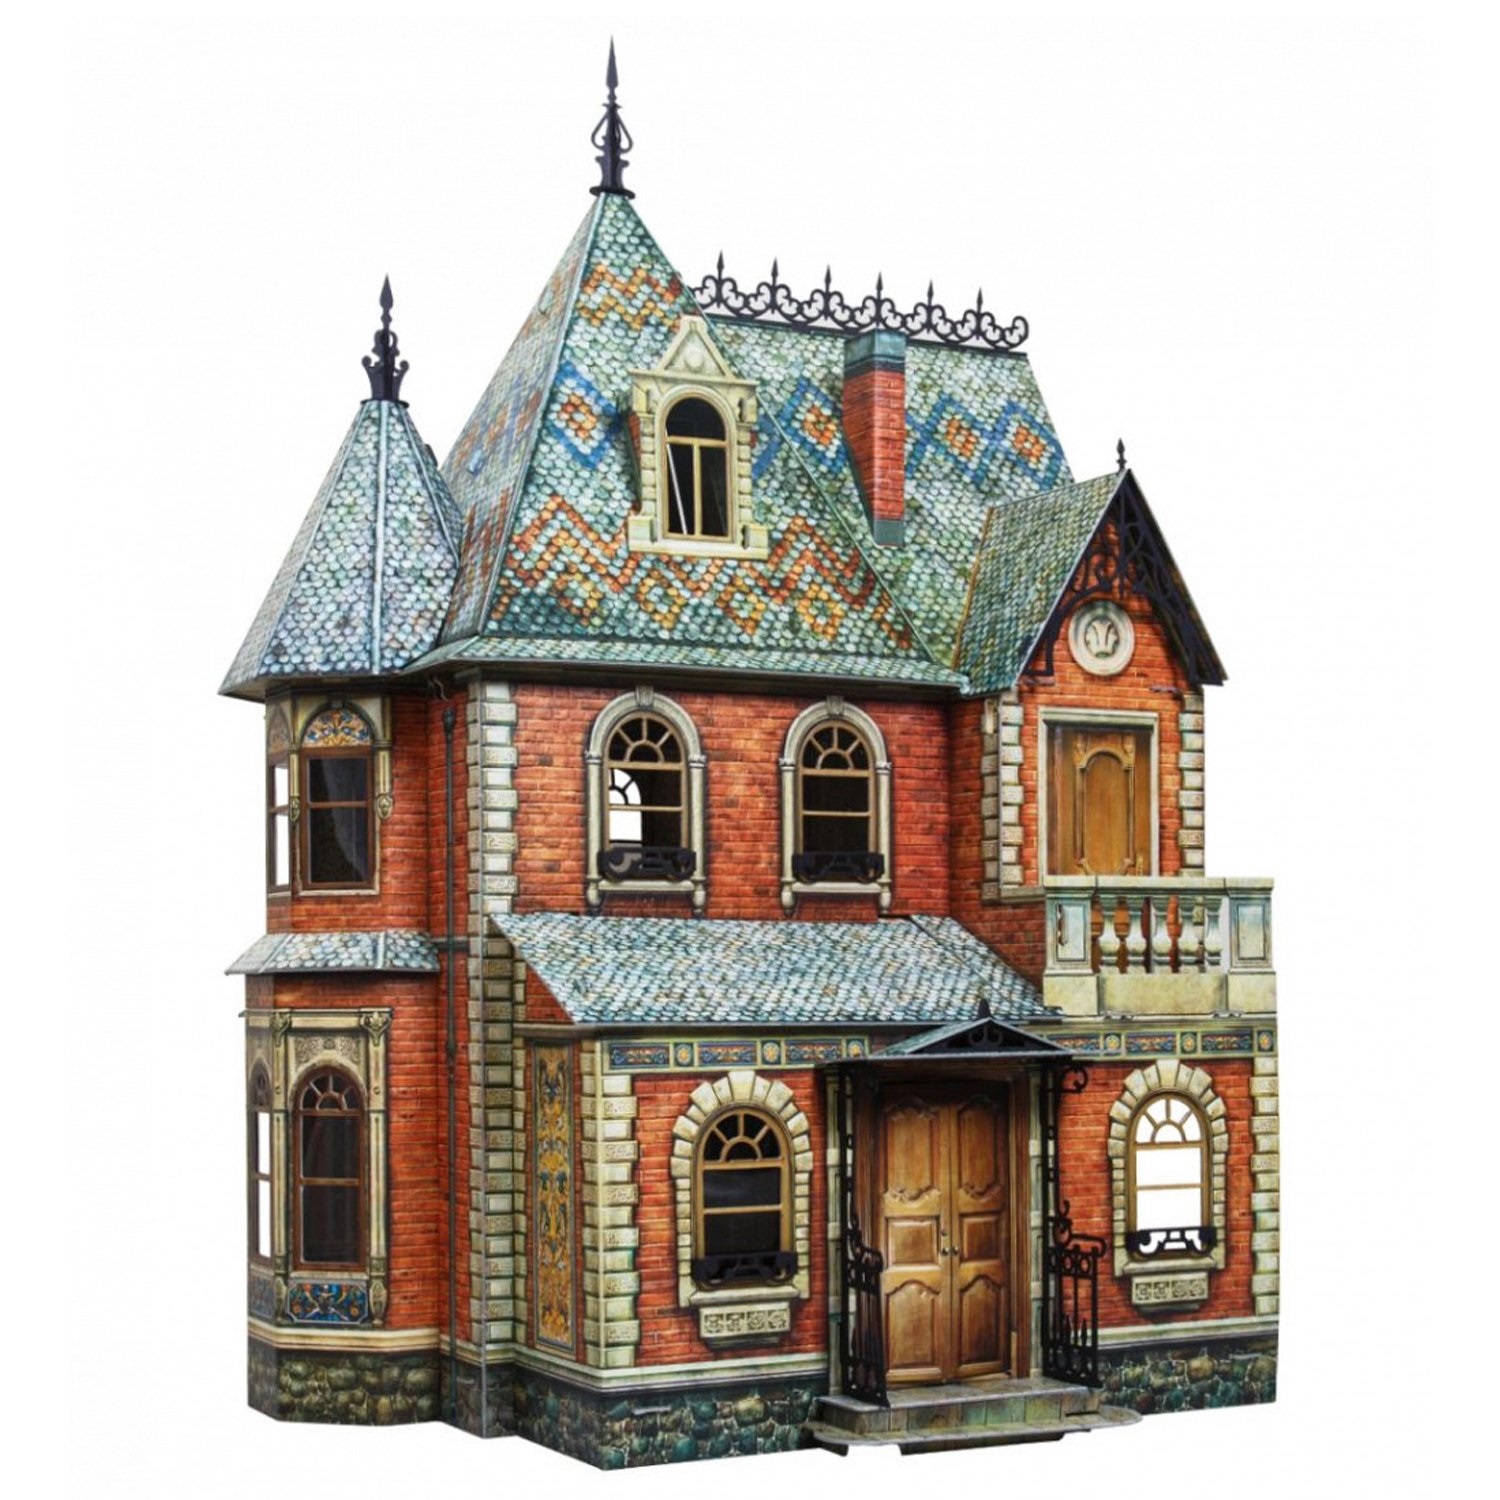 Сборные модели домов. УМБУМ румбокс. Victorian Dollhouse кукольный дом. Умная бумага кукольный дом 1. Умная бумага кукольный дом Victorian.